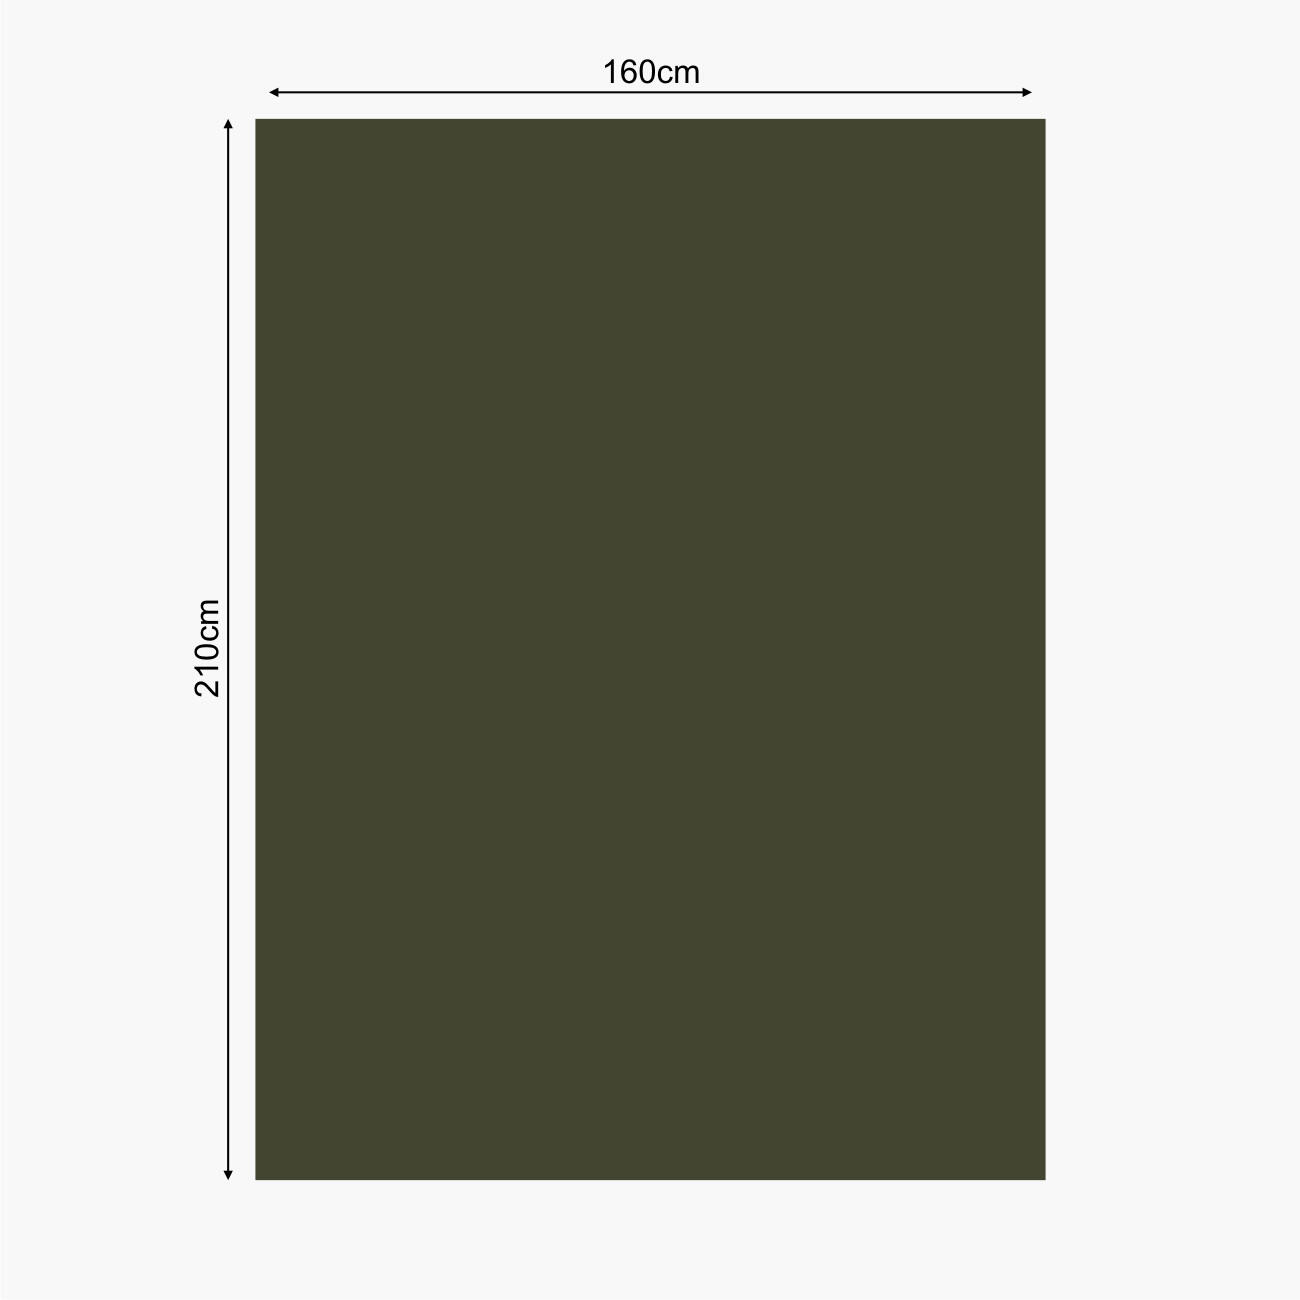 Lomo Military Emergency Foil Blanket - Green 4/6